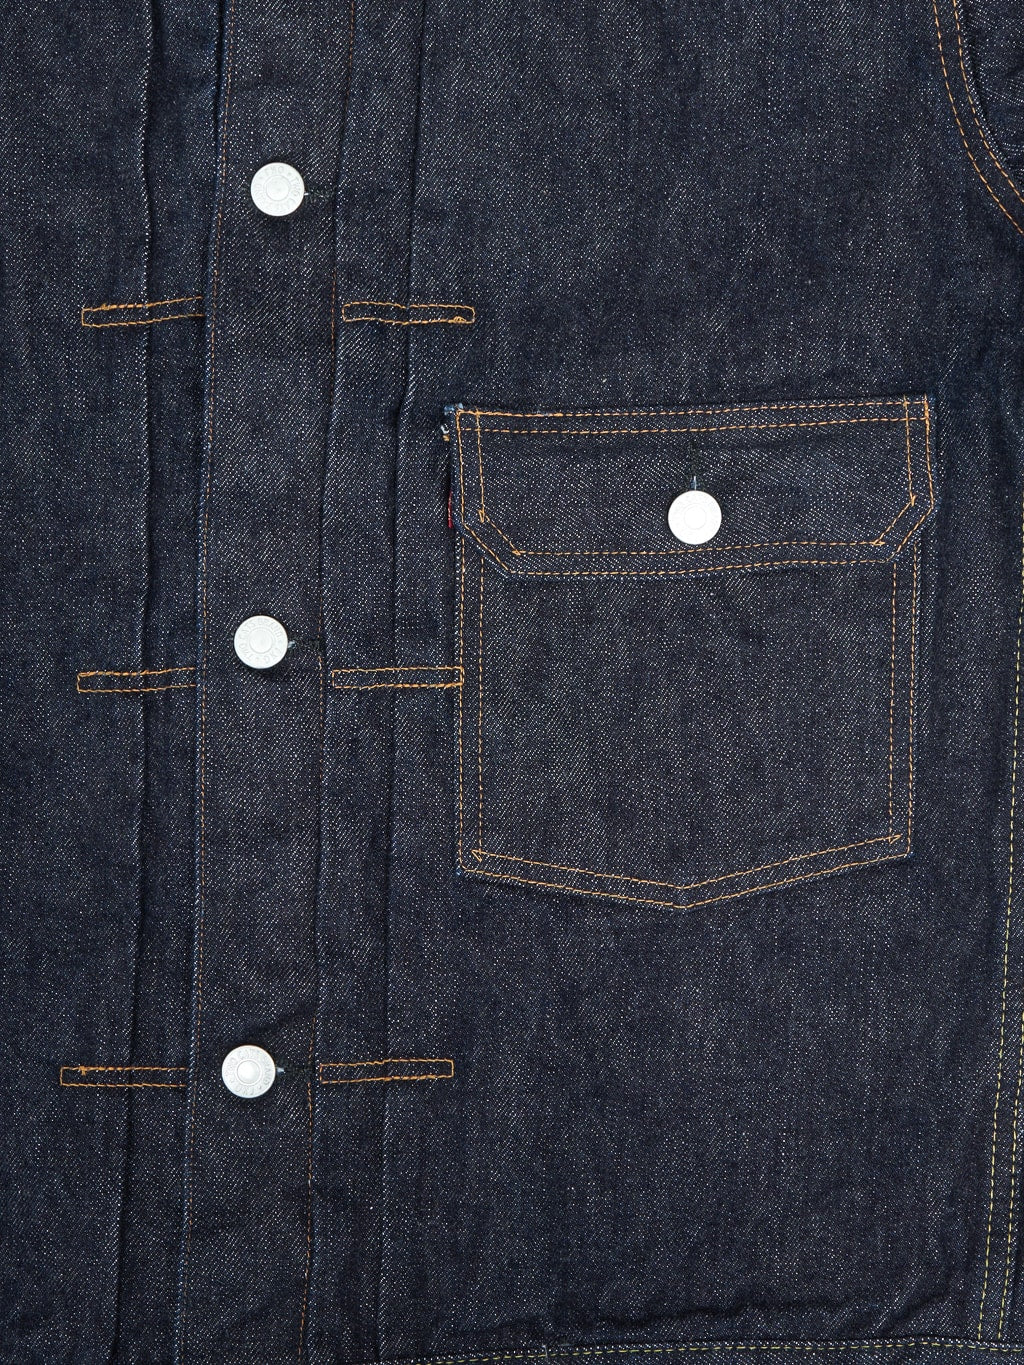 tcb 30s denim jacket button chest details